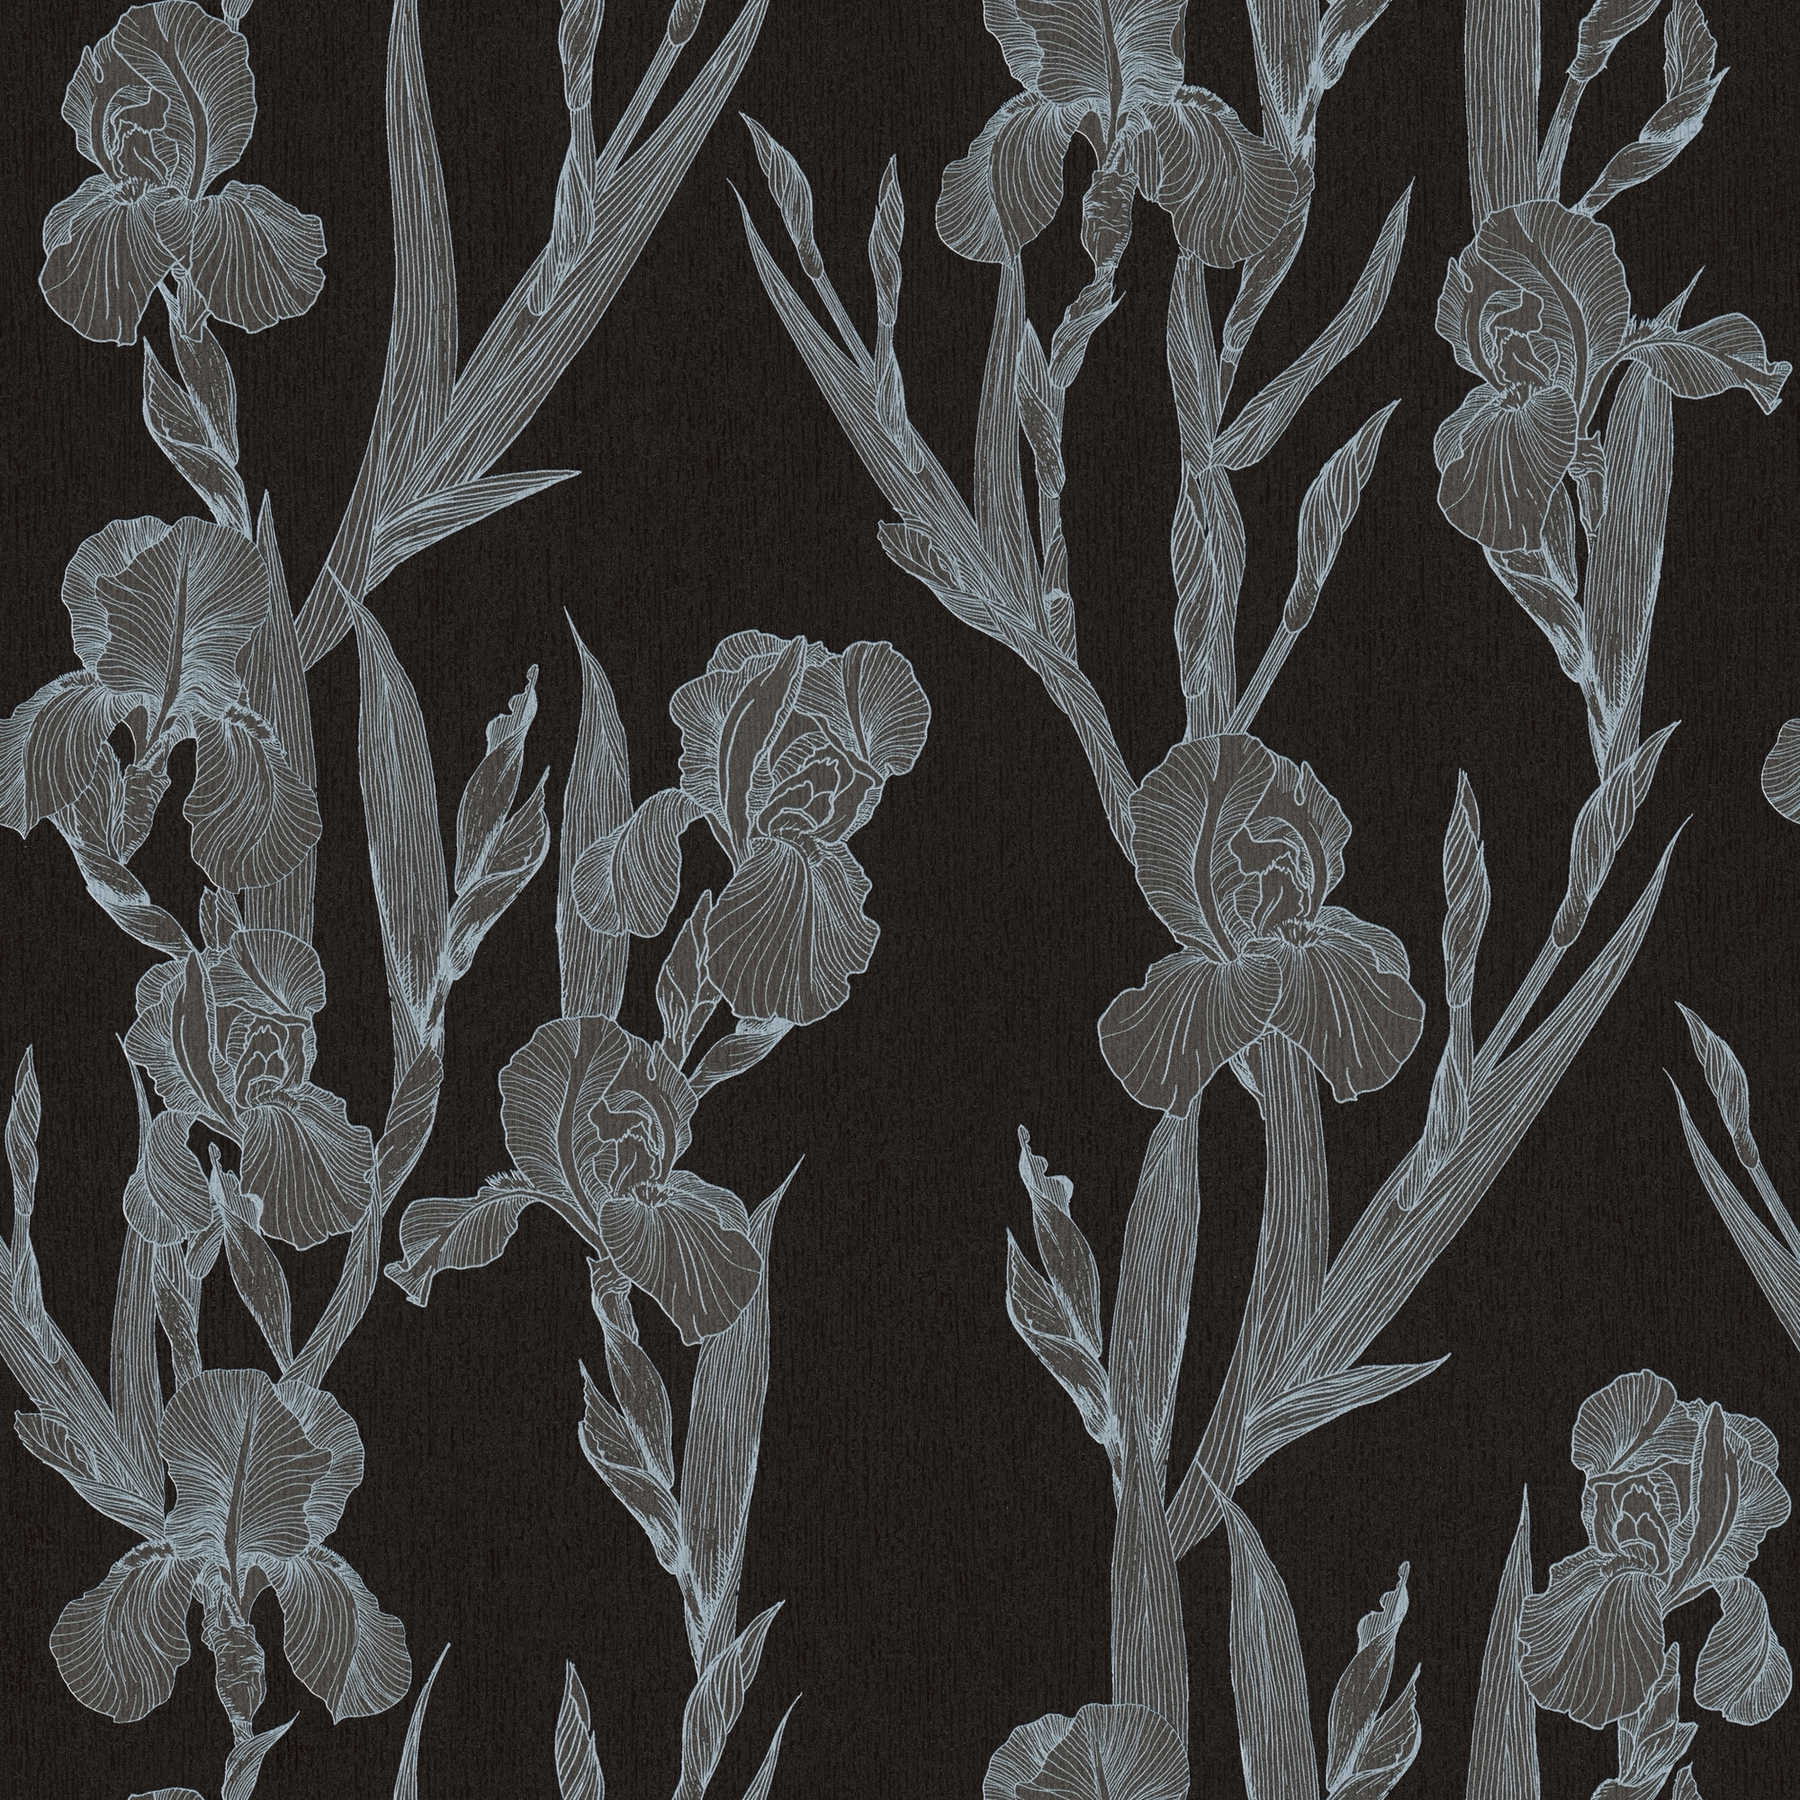 Papel pintado floral moderno estilizado, zarcillos de flores - negro, gris, blanco
